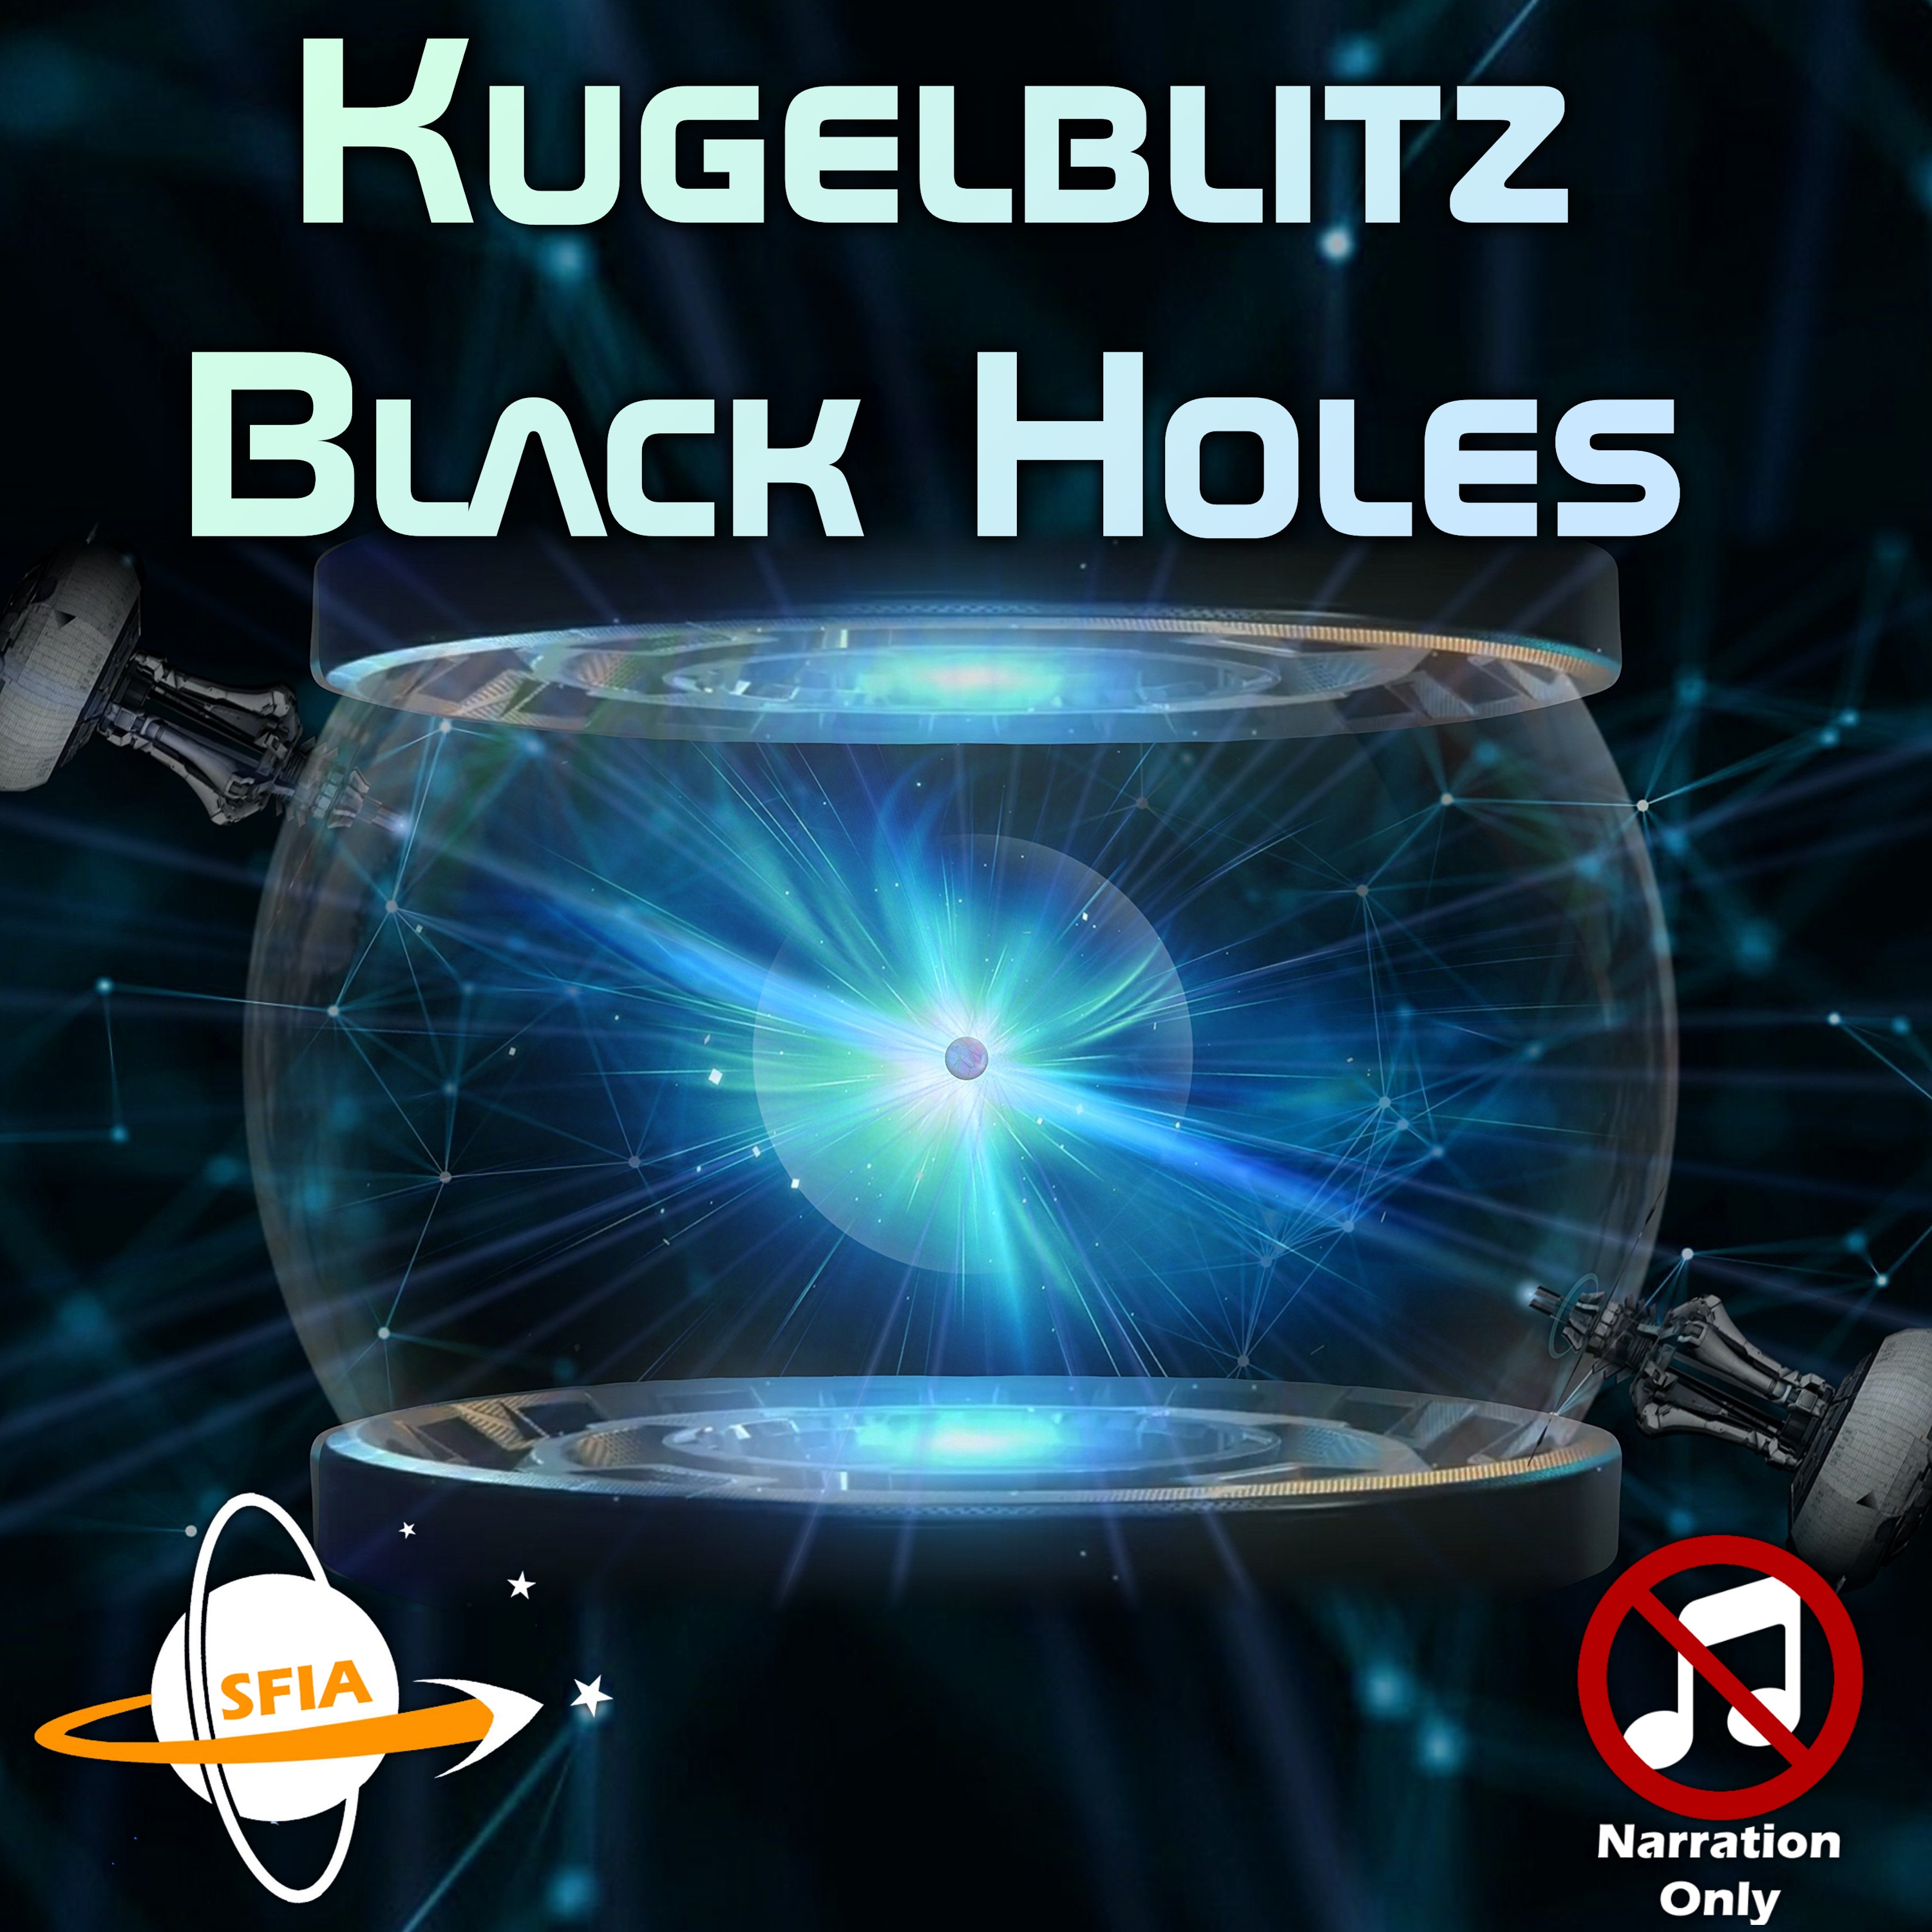 Kugelblitz Black Holes (Narration Only)